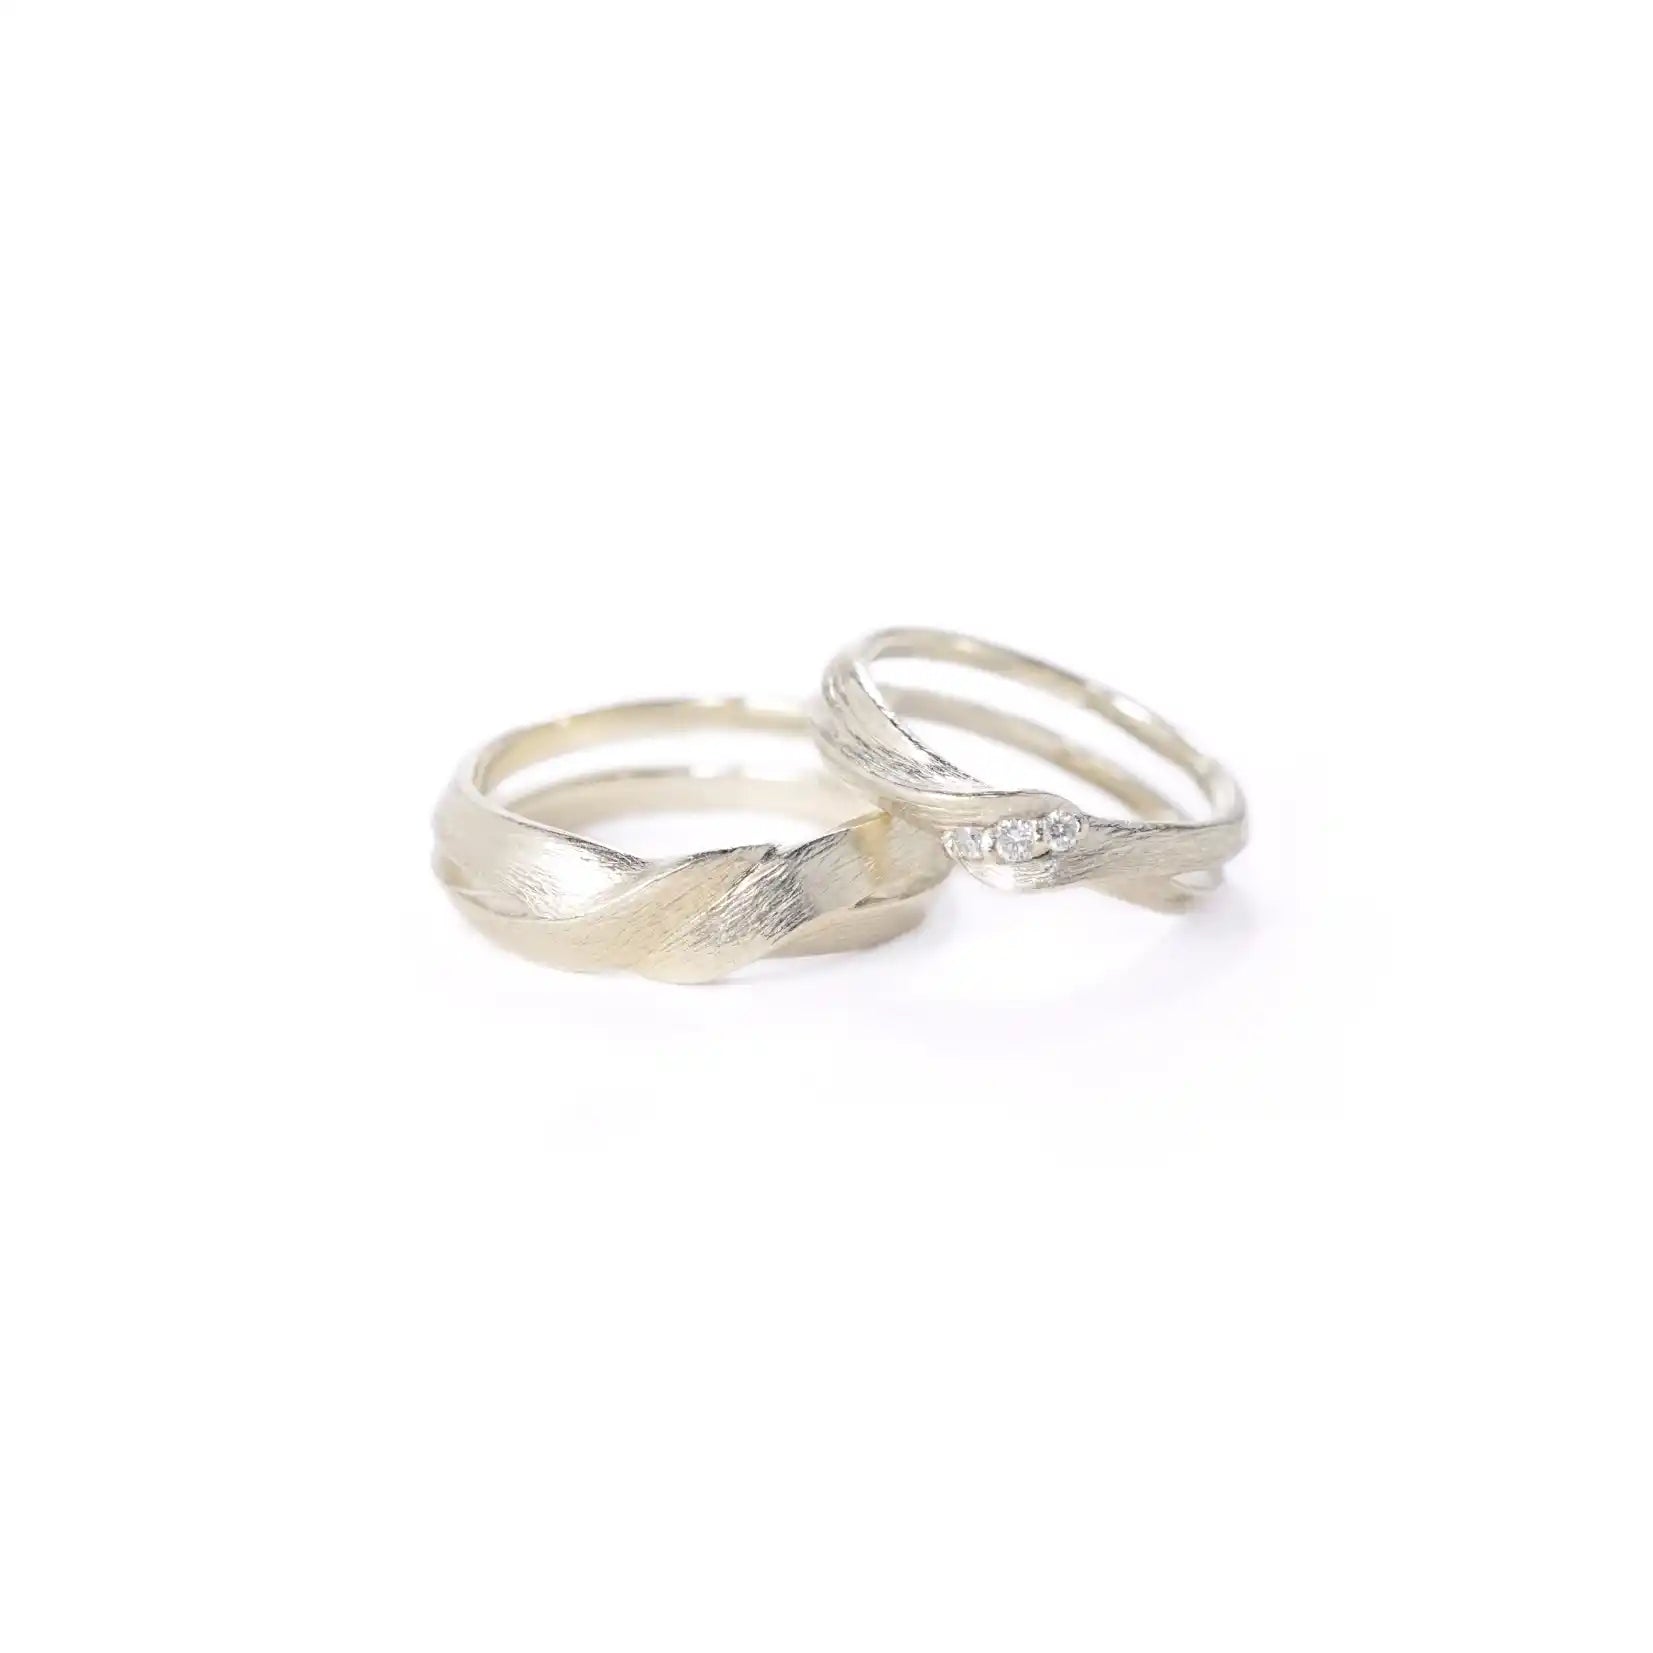 Chia Jewelry簡約婚戒對戒客製化，以平行線為設計靈感，鑲鑽簡約婚戒款式